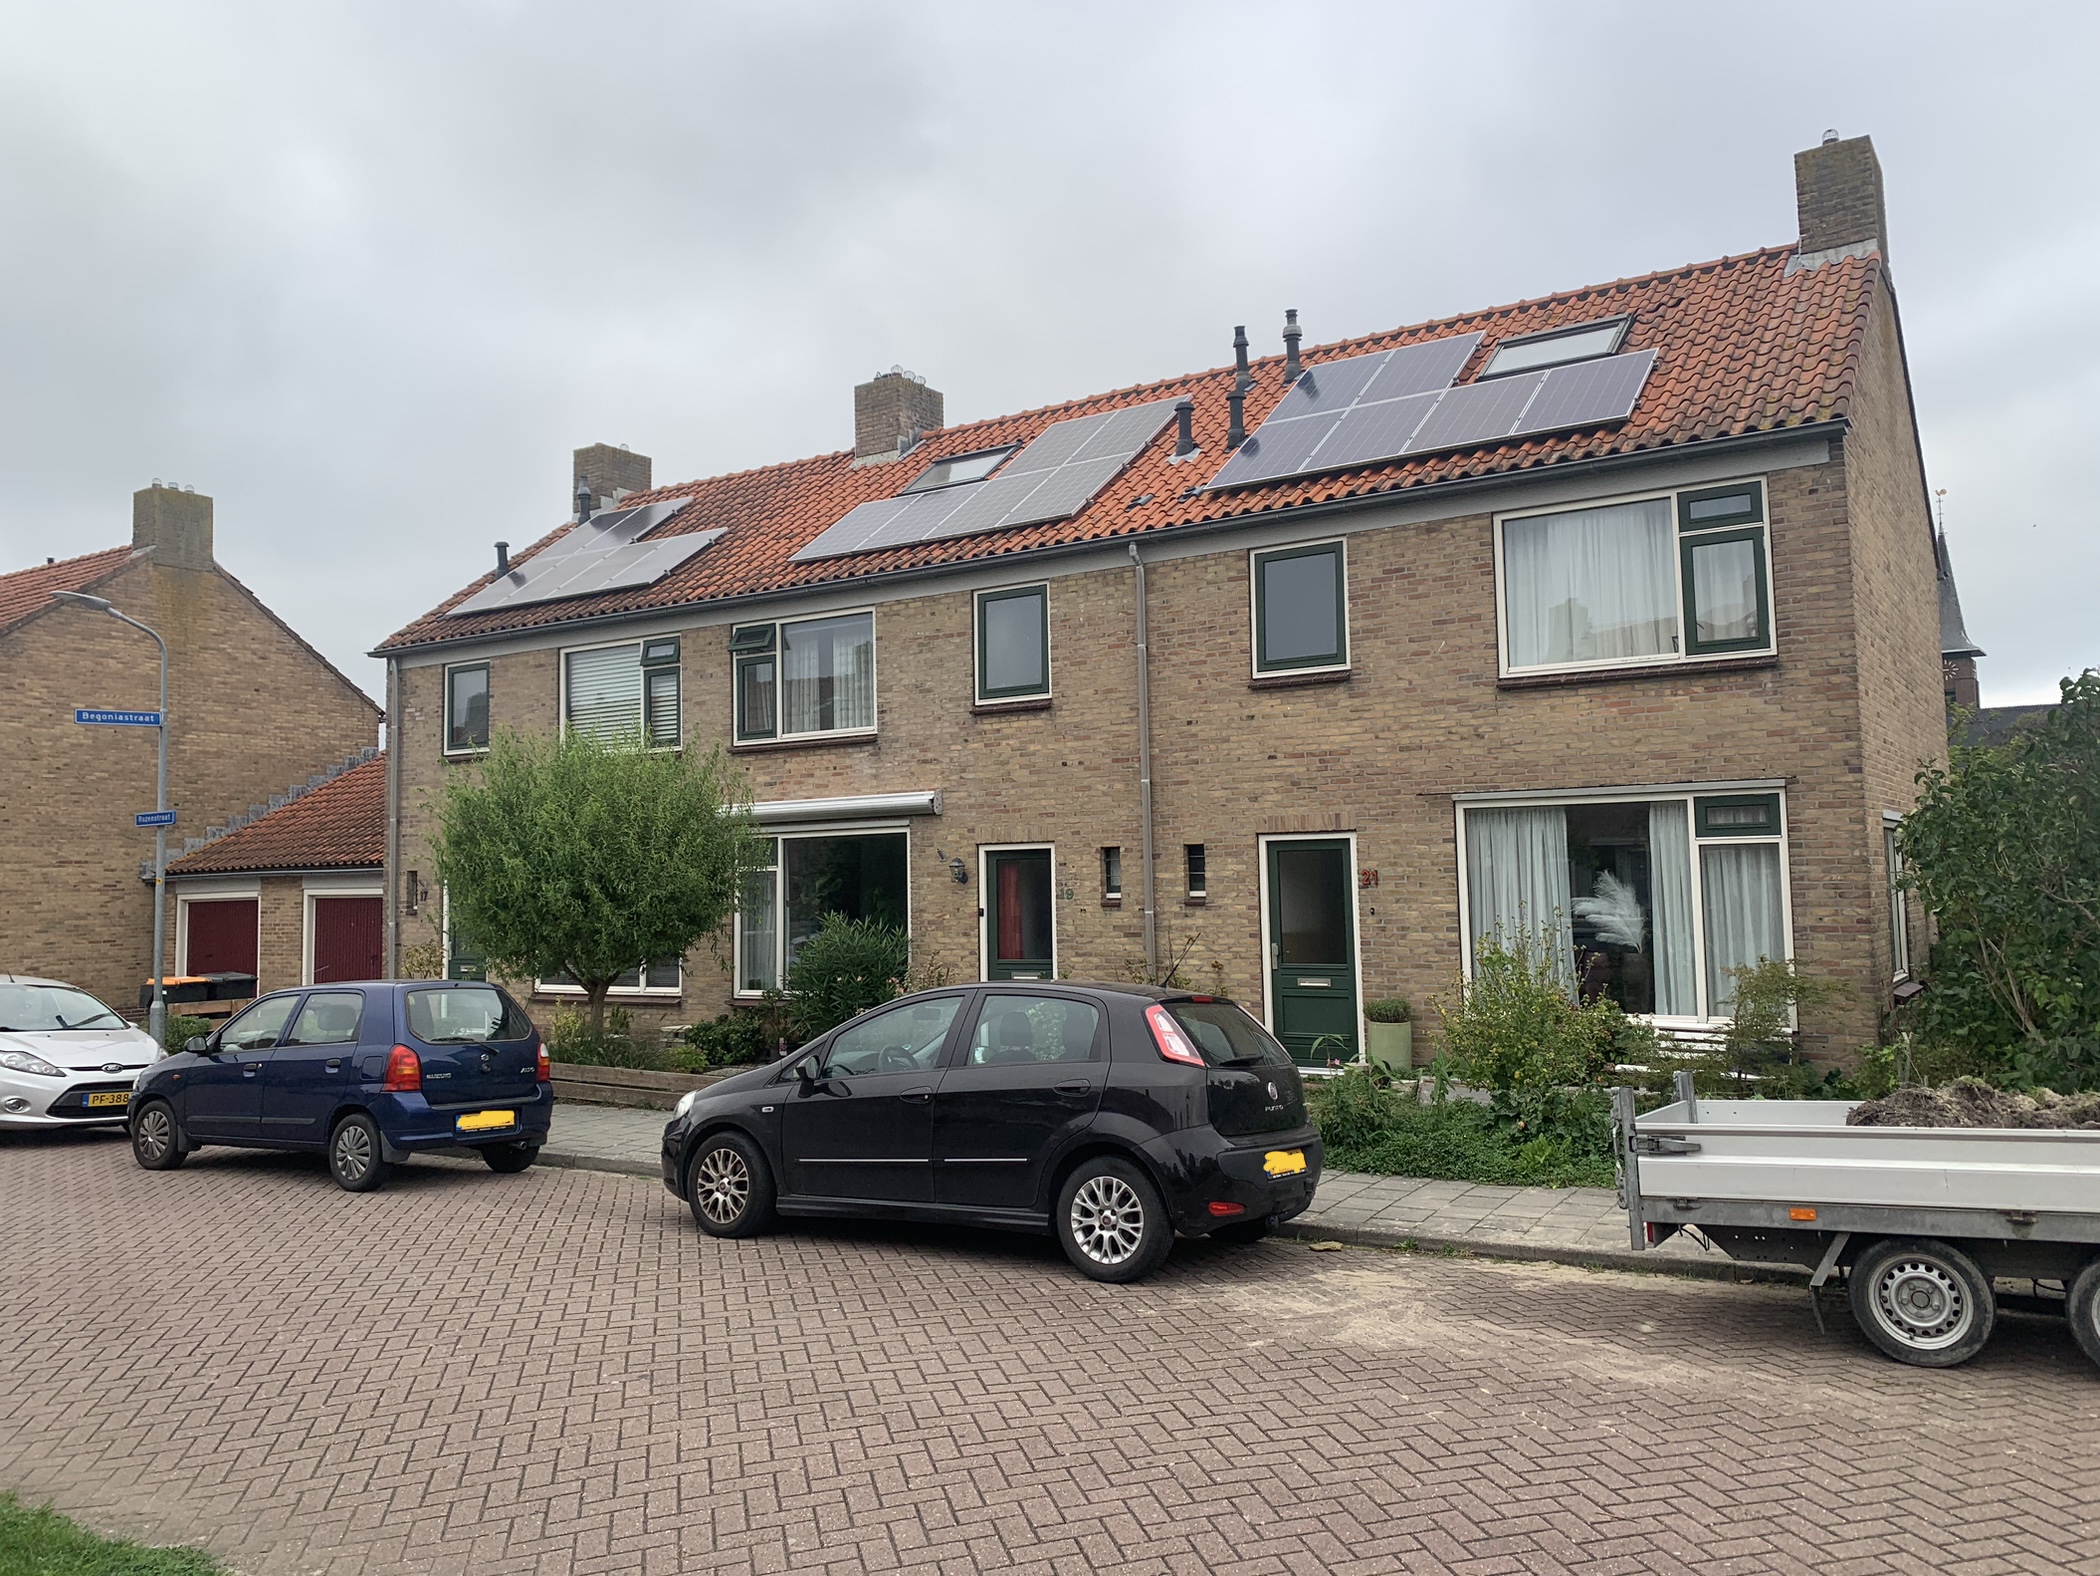 Rozenstraat 19, 1723 XP Noord-Scharwoude, Nederland